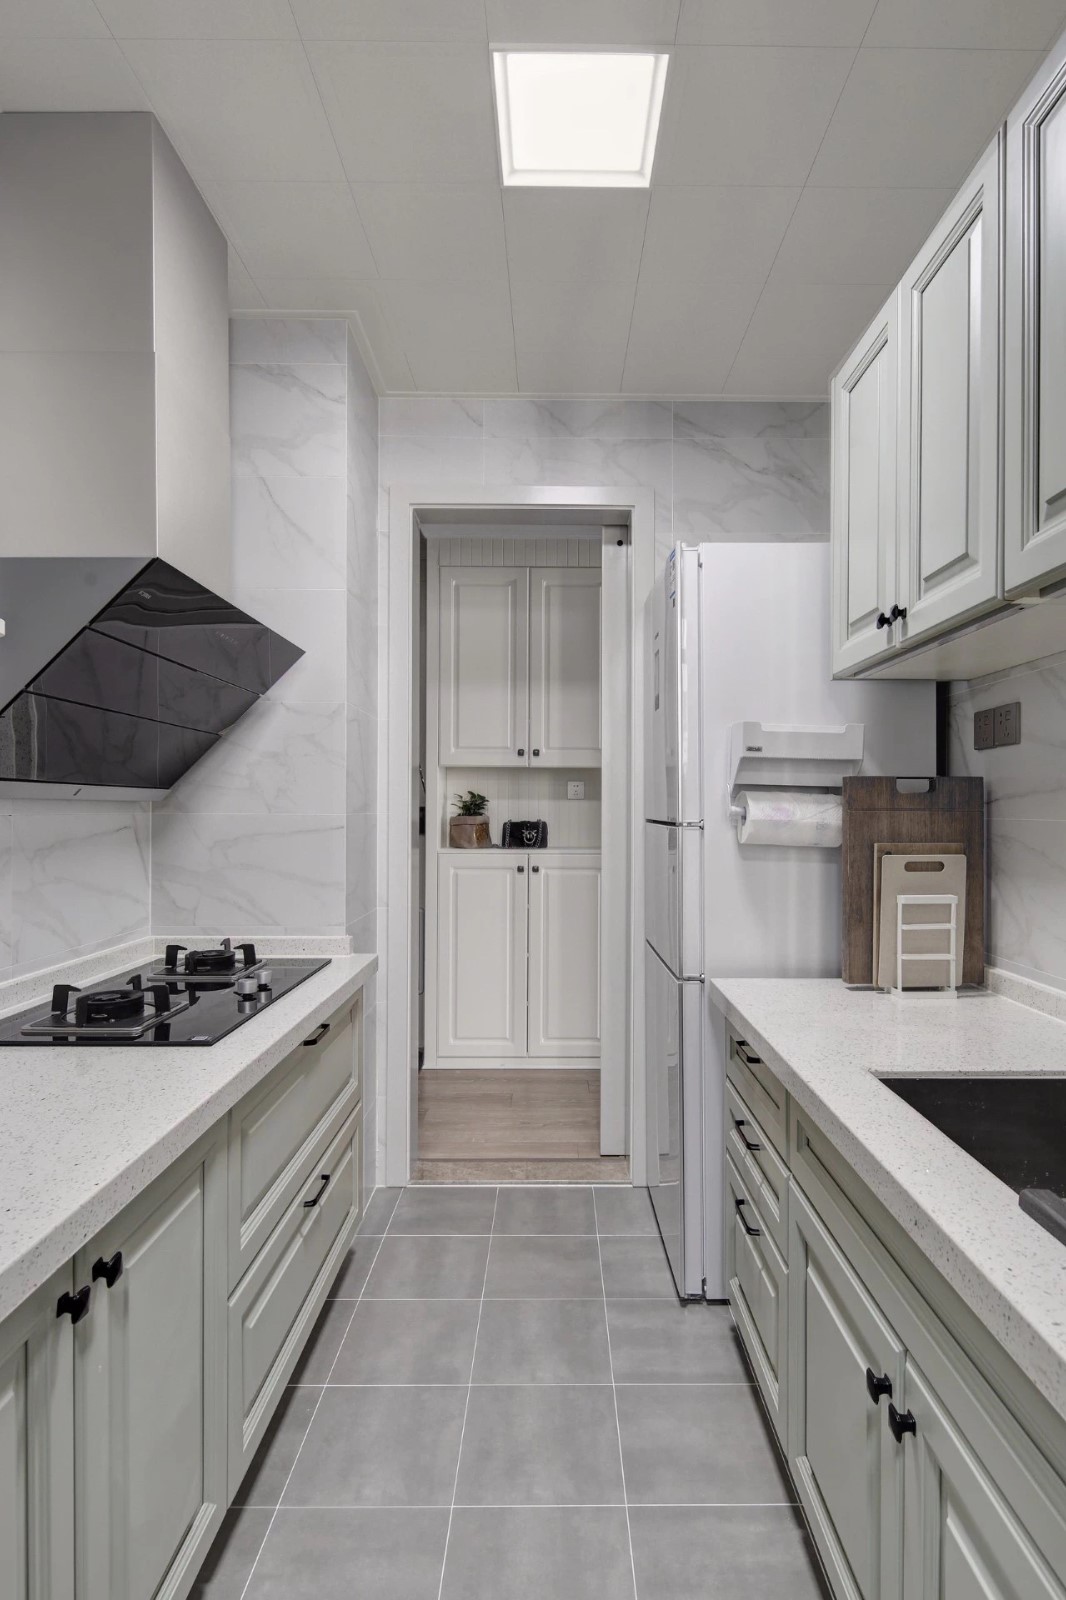 厨房地面铺设灰色哑光砖,墙面铺设大理石纹瓷砖,搭配上灰白色的橱柜